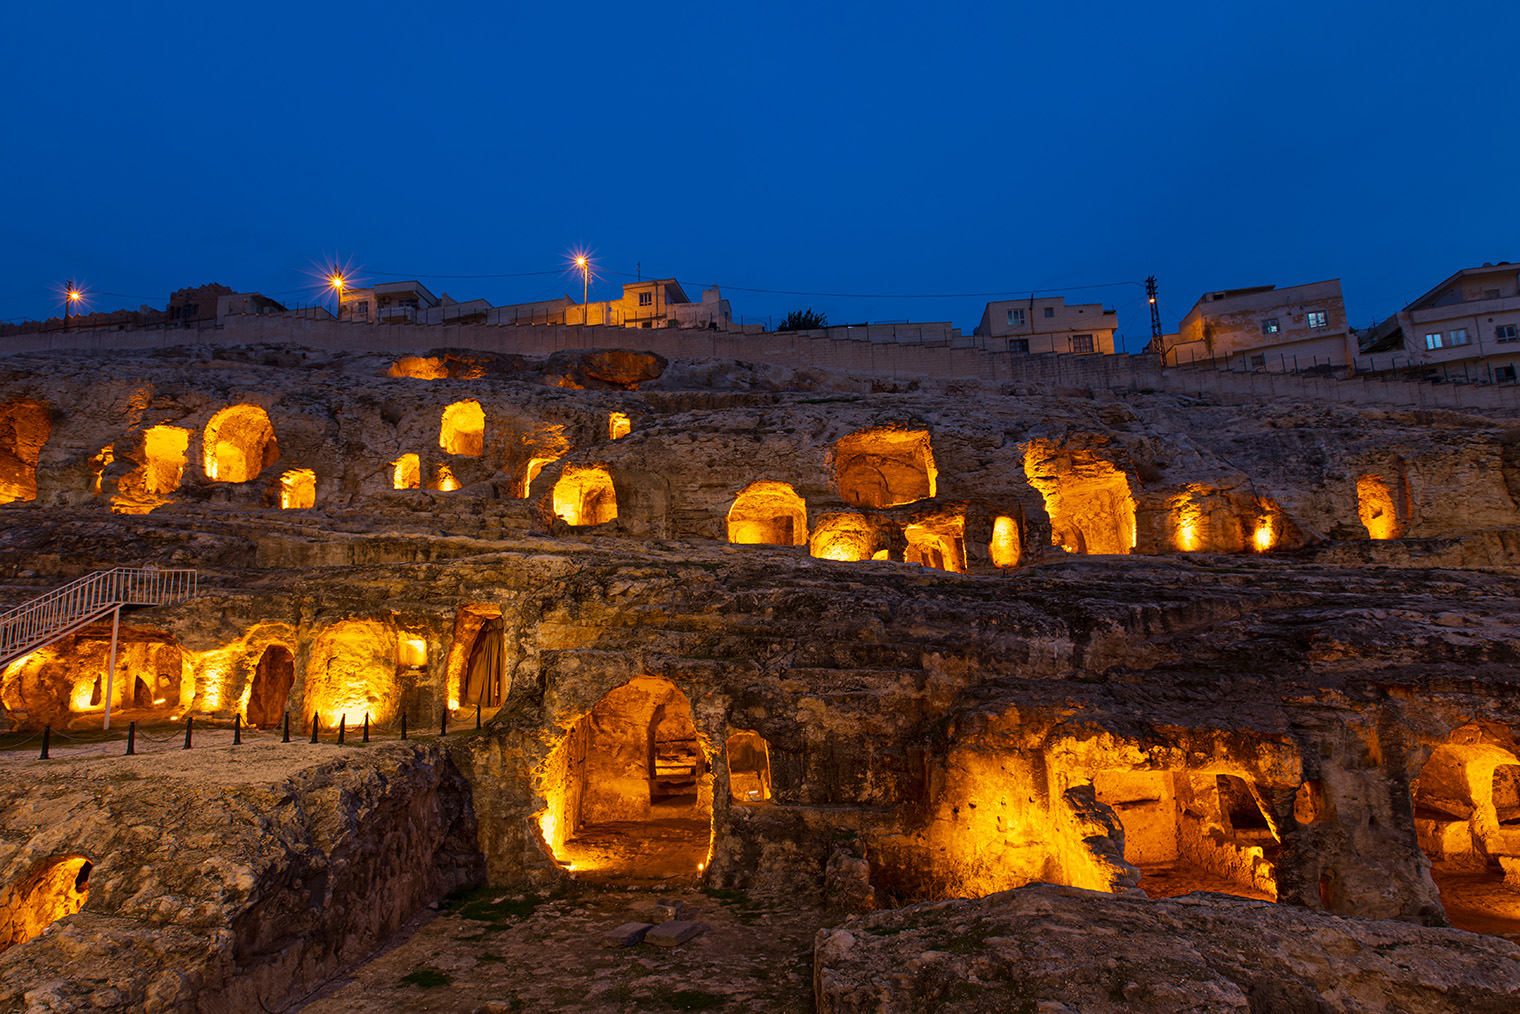 Римский некрополь с вечерней подсветкой. Фотография: f9project / Shutterstock / FOTODOM